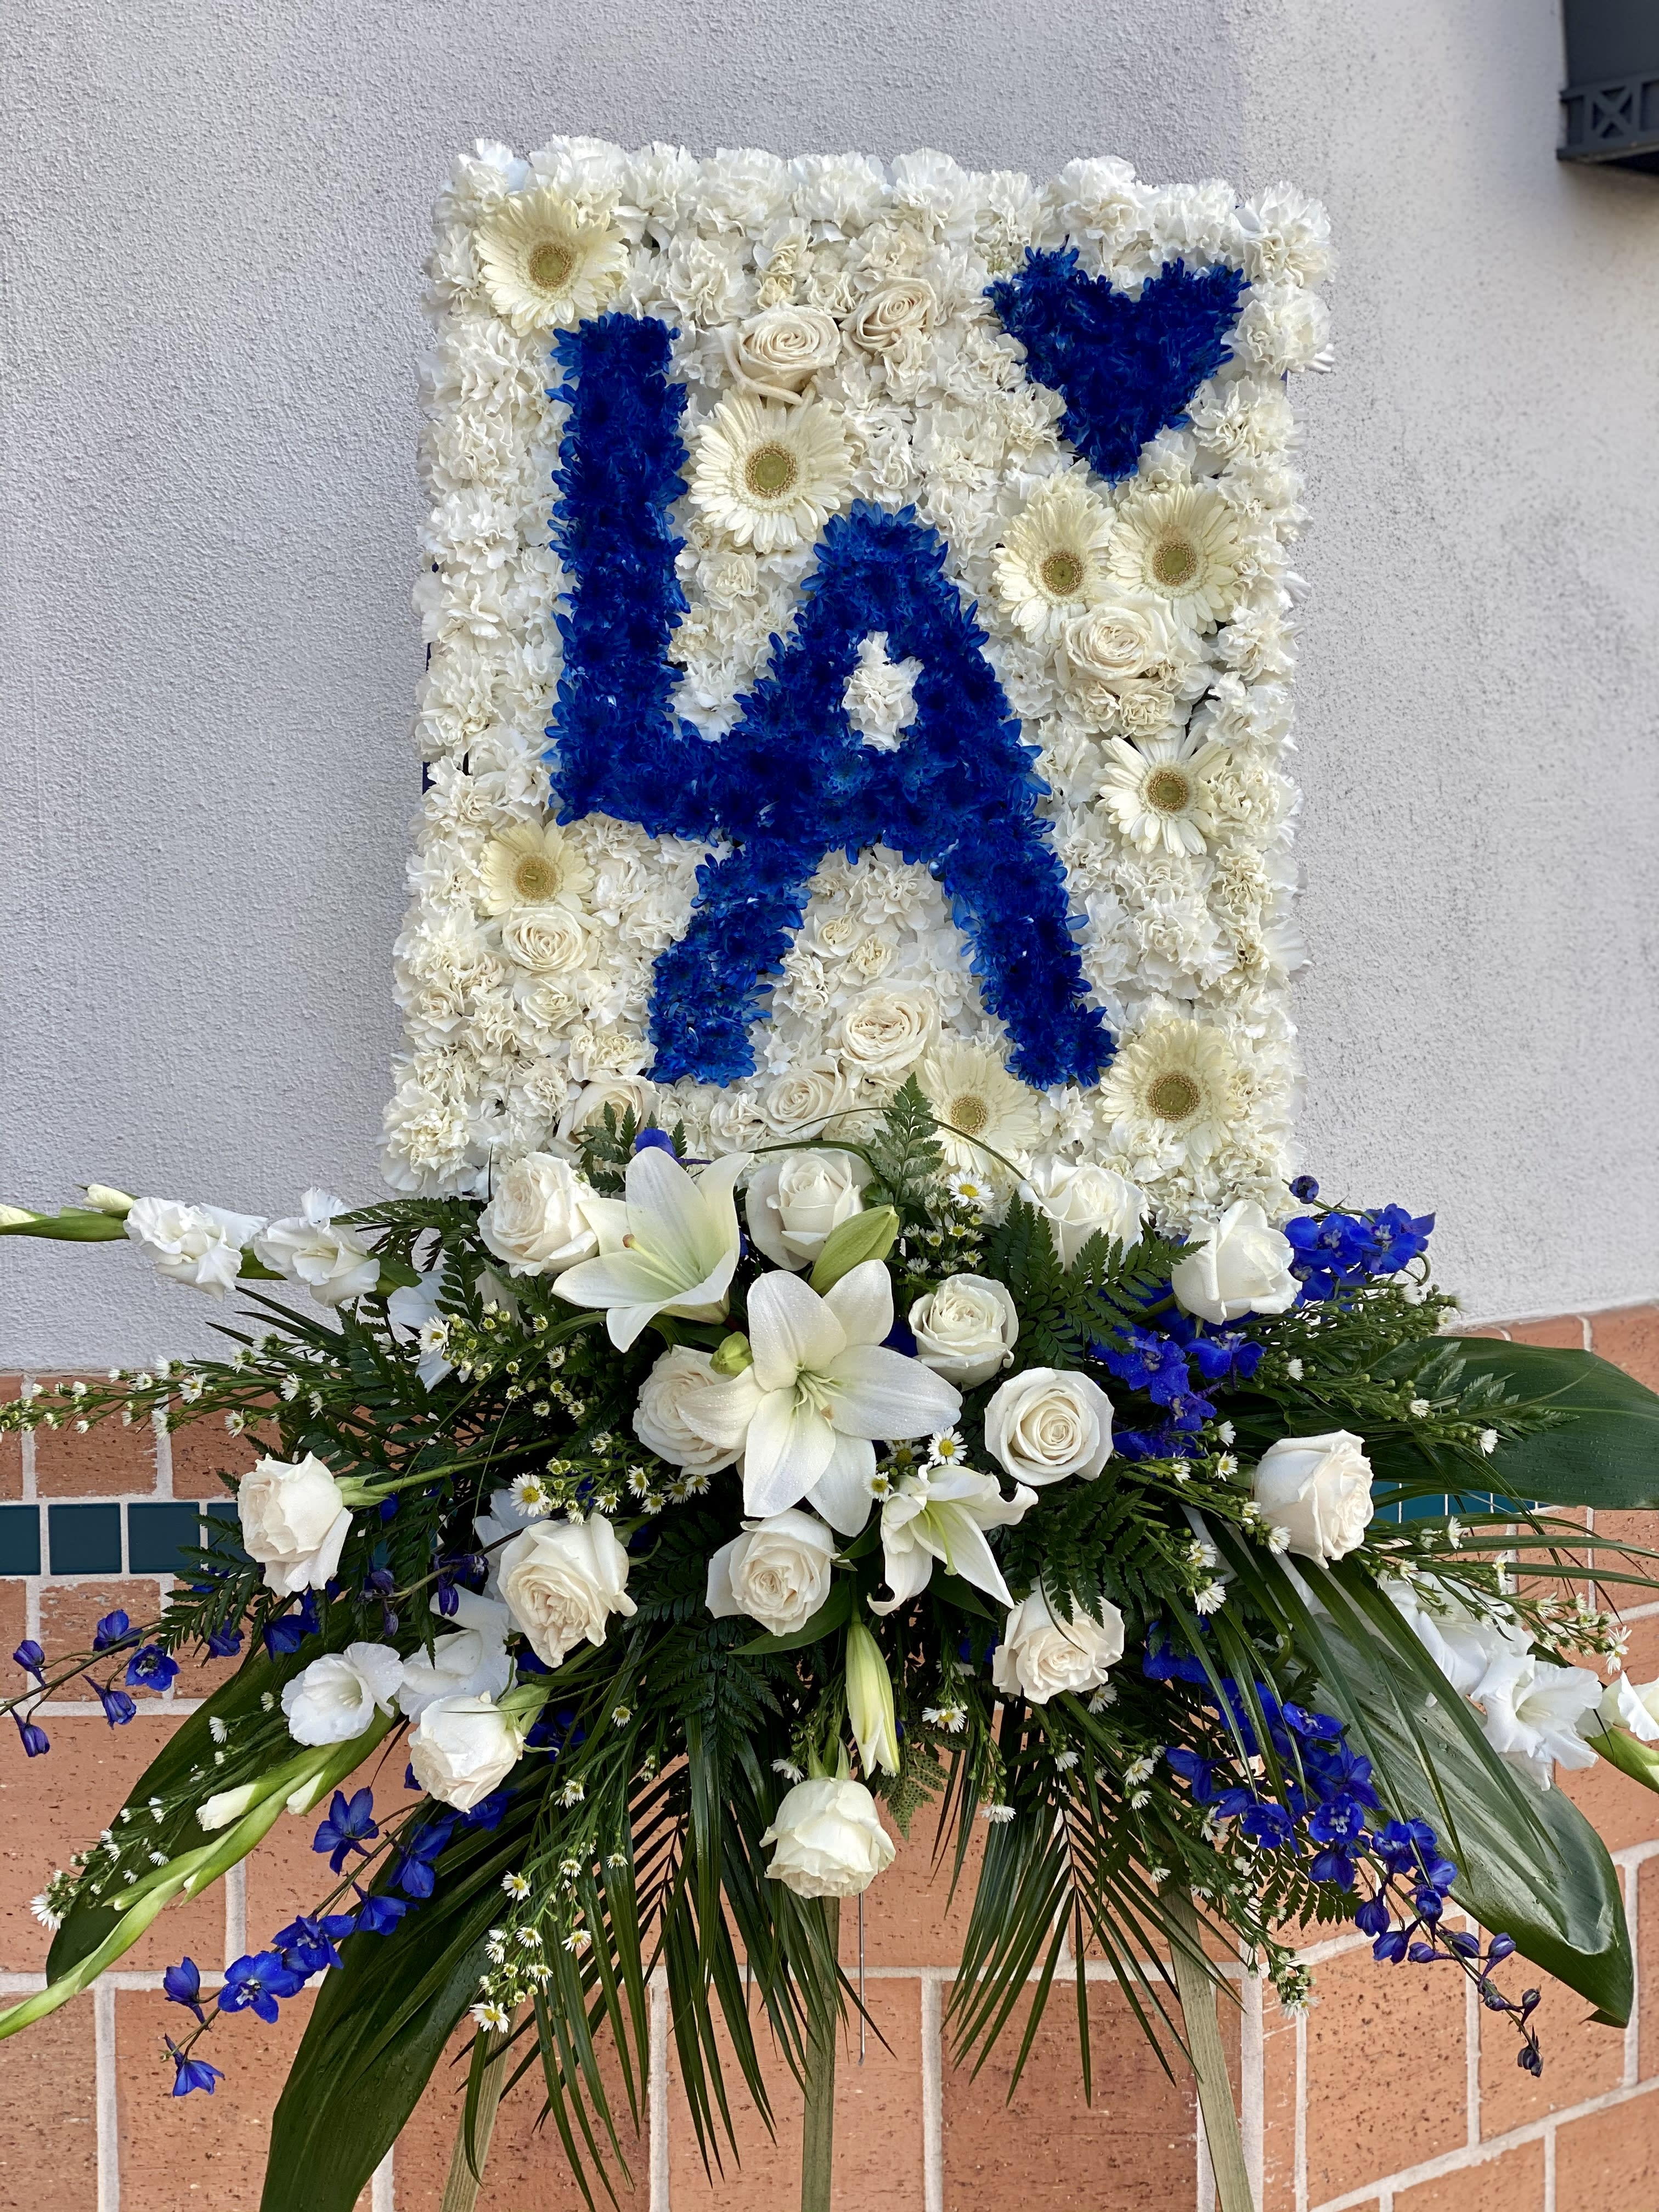 LA Dodgers Floral Arrangement 